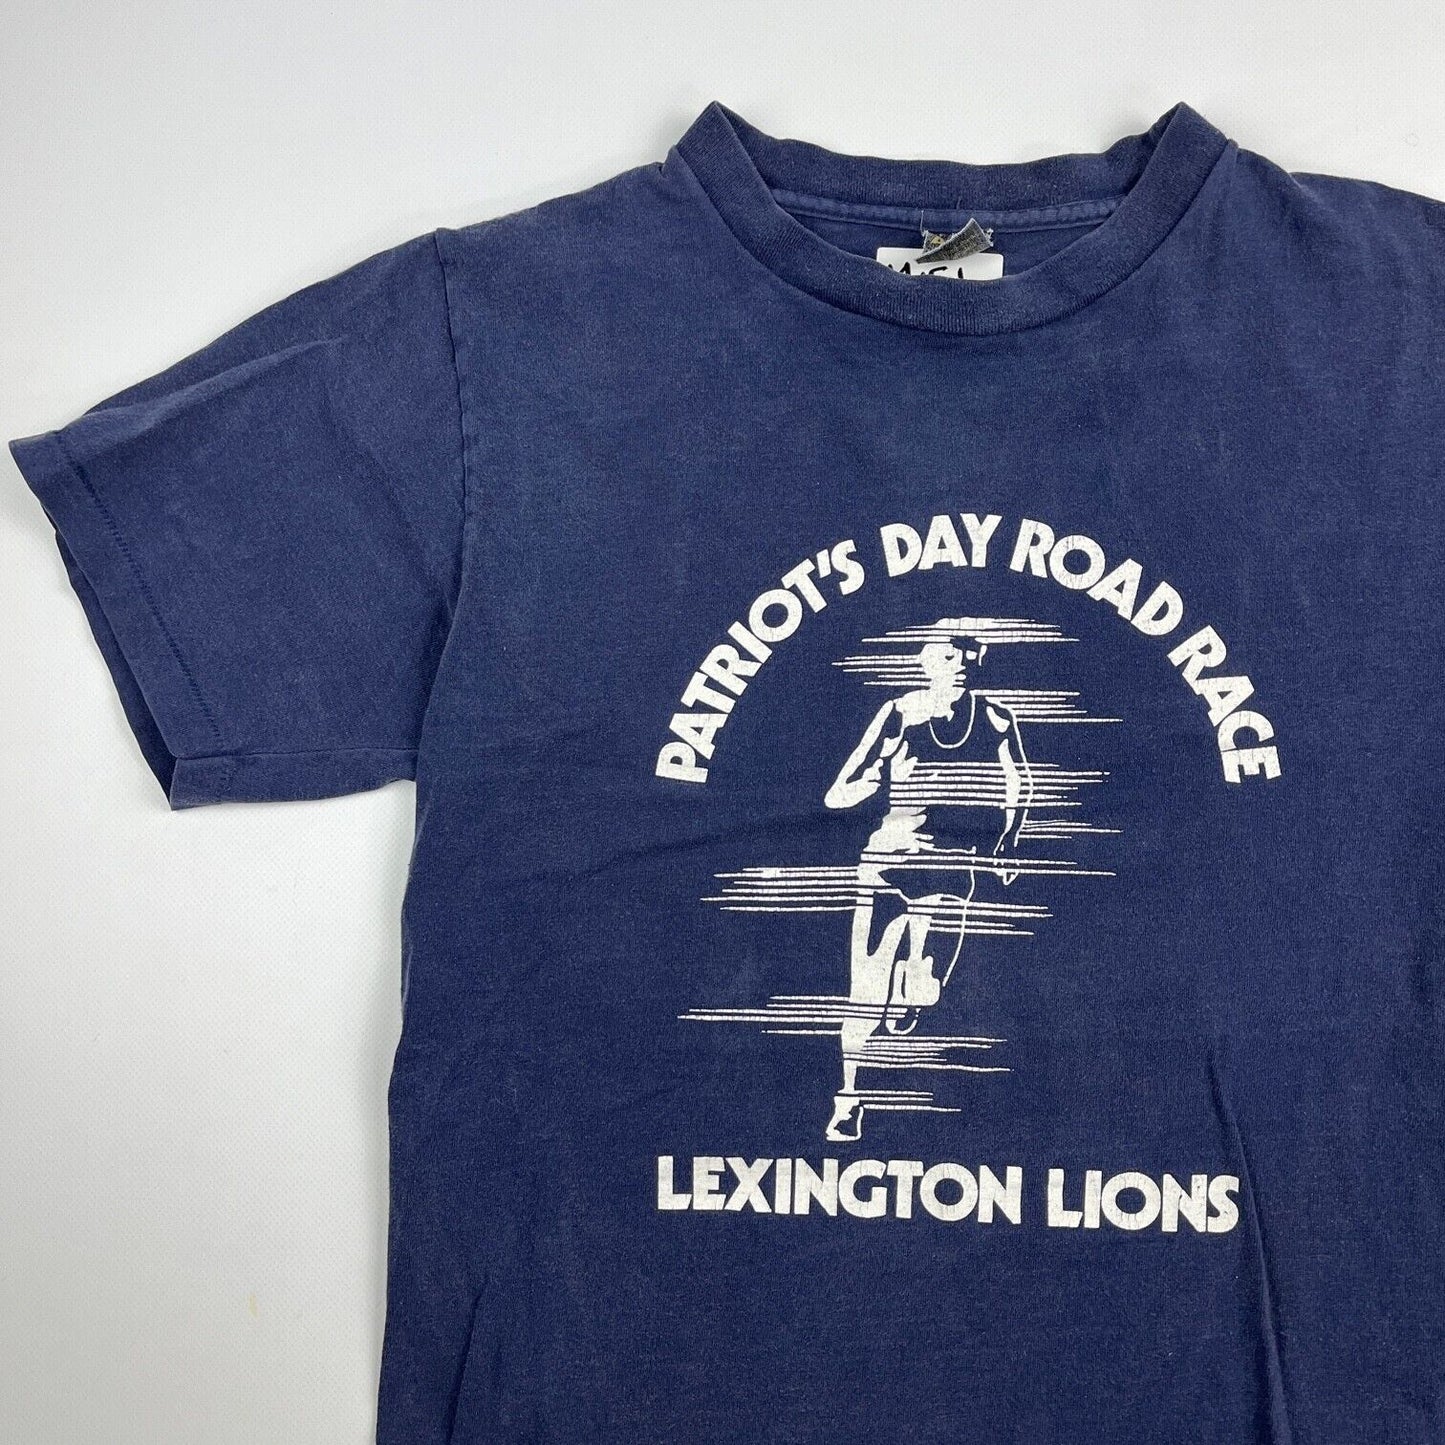 VINTAGE Lexington Lions Road Race Shirt Adult Small Navy Blue Marathon Men 90s